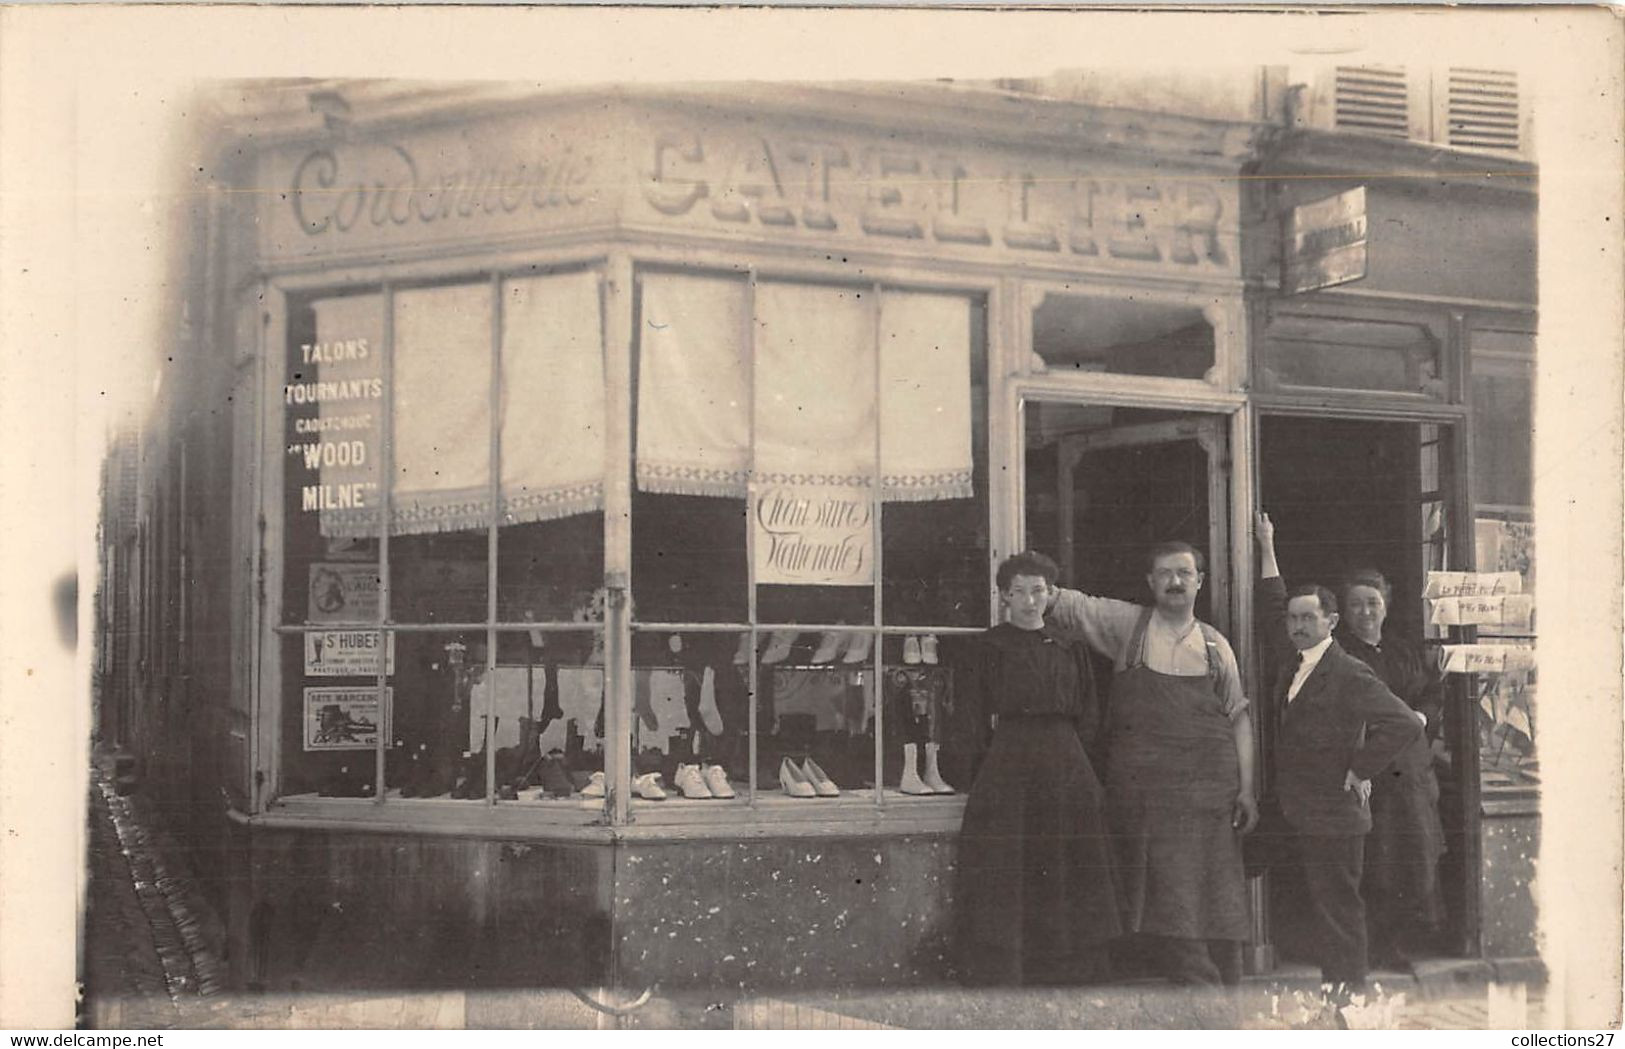 CORDONNERIE- CARTE-PHOTO- CATELLIER- PARIS 17eme A CONTRÔLER- 47 RUE LACROIX ANGLE RUE DAVY - Shops